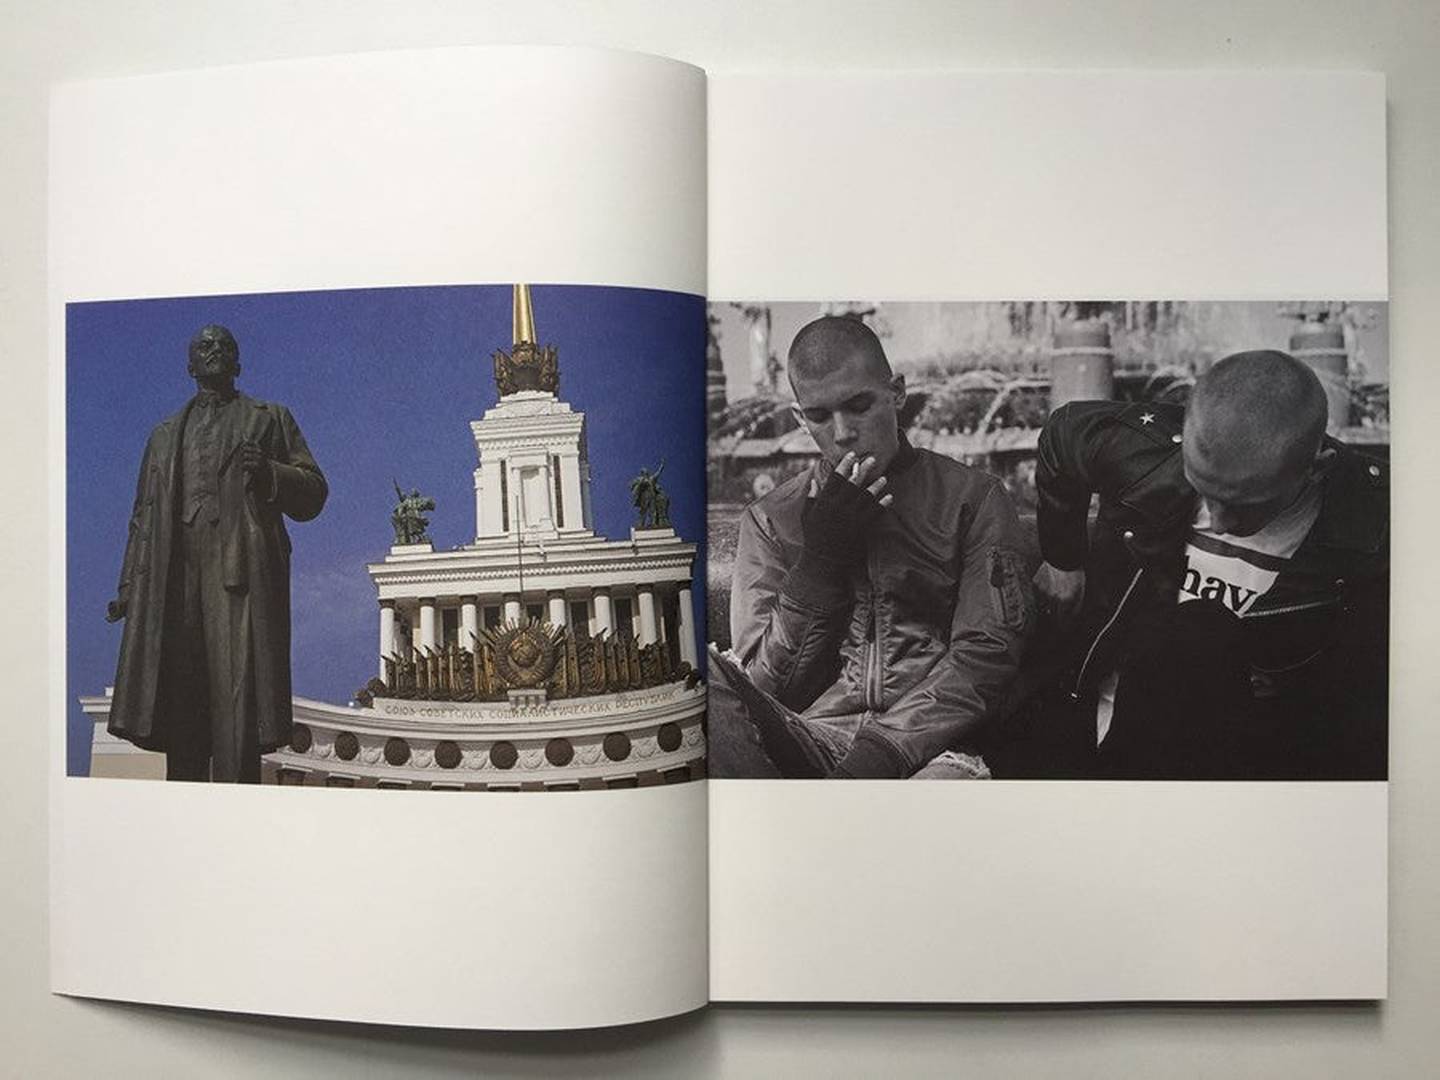 Inside Gosha Rubchinskiy's latest book, 'Youth Hotel' (2015).